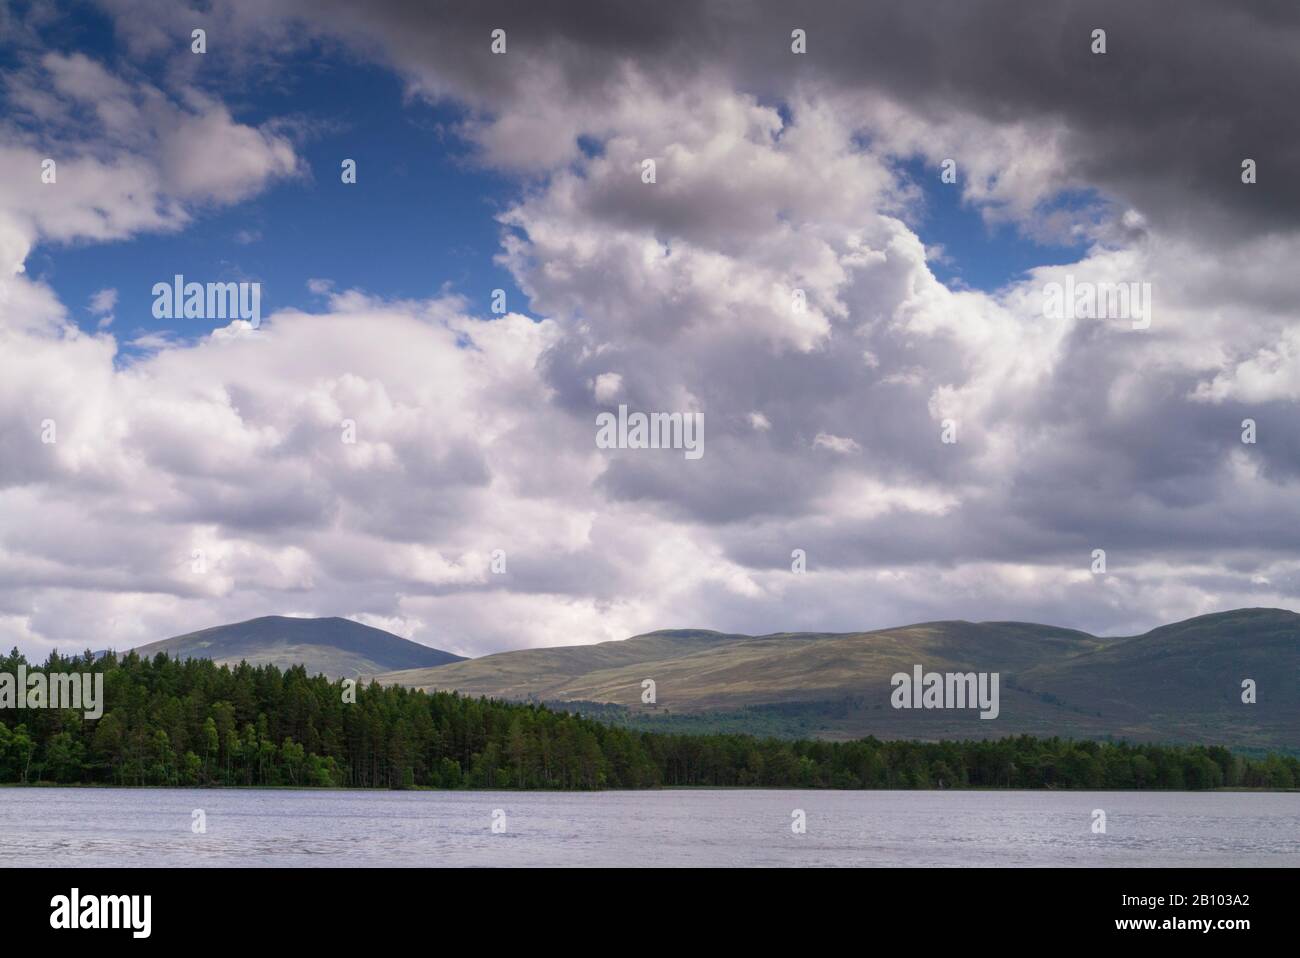 Loch Garten Cairngorm National Park Scotland UK Stock Photo